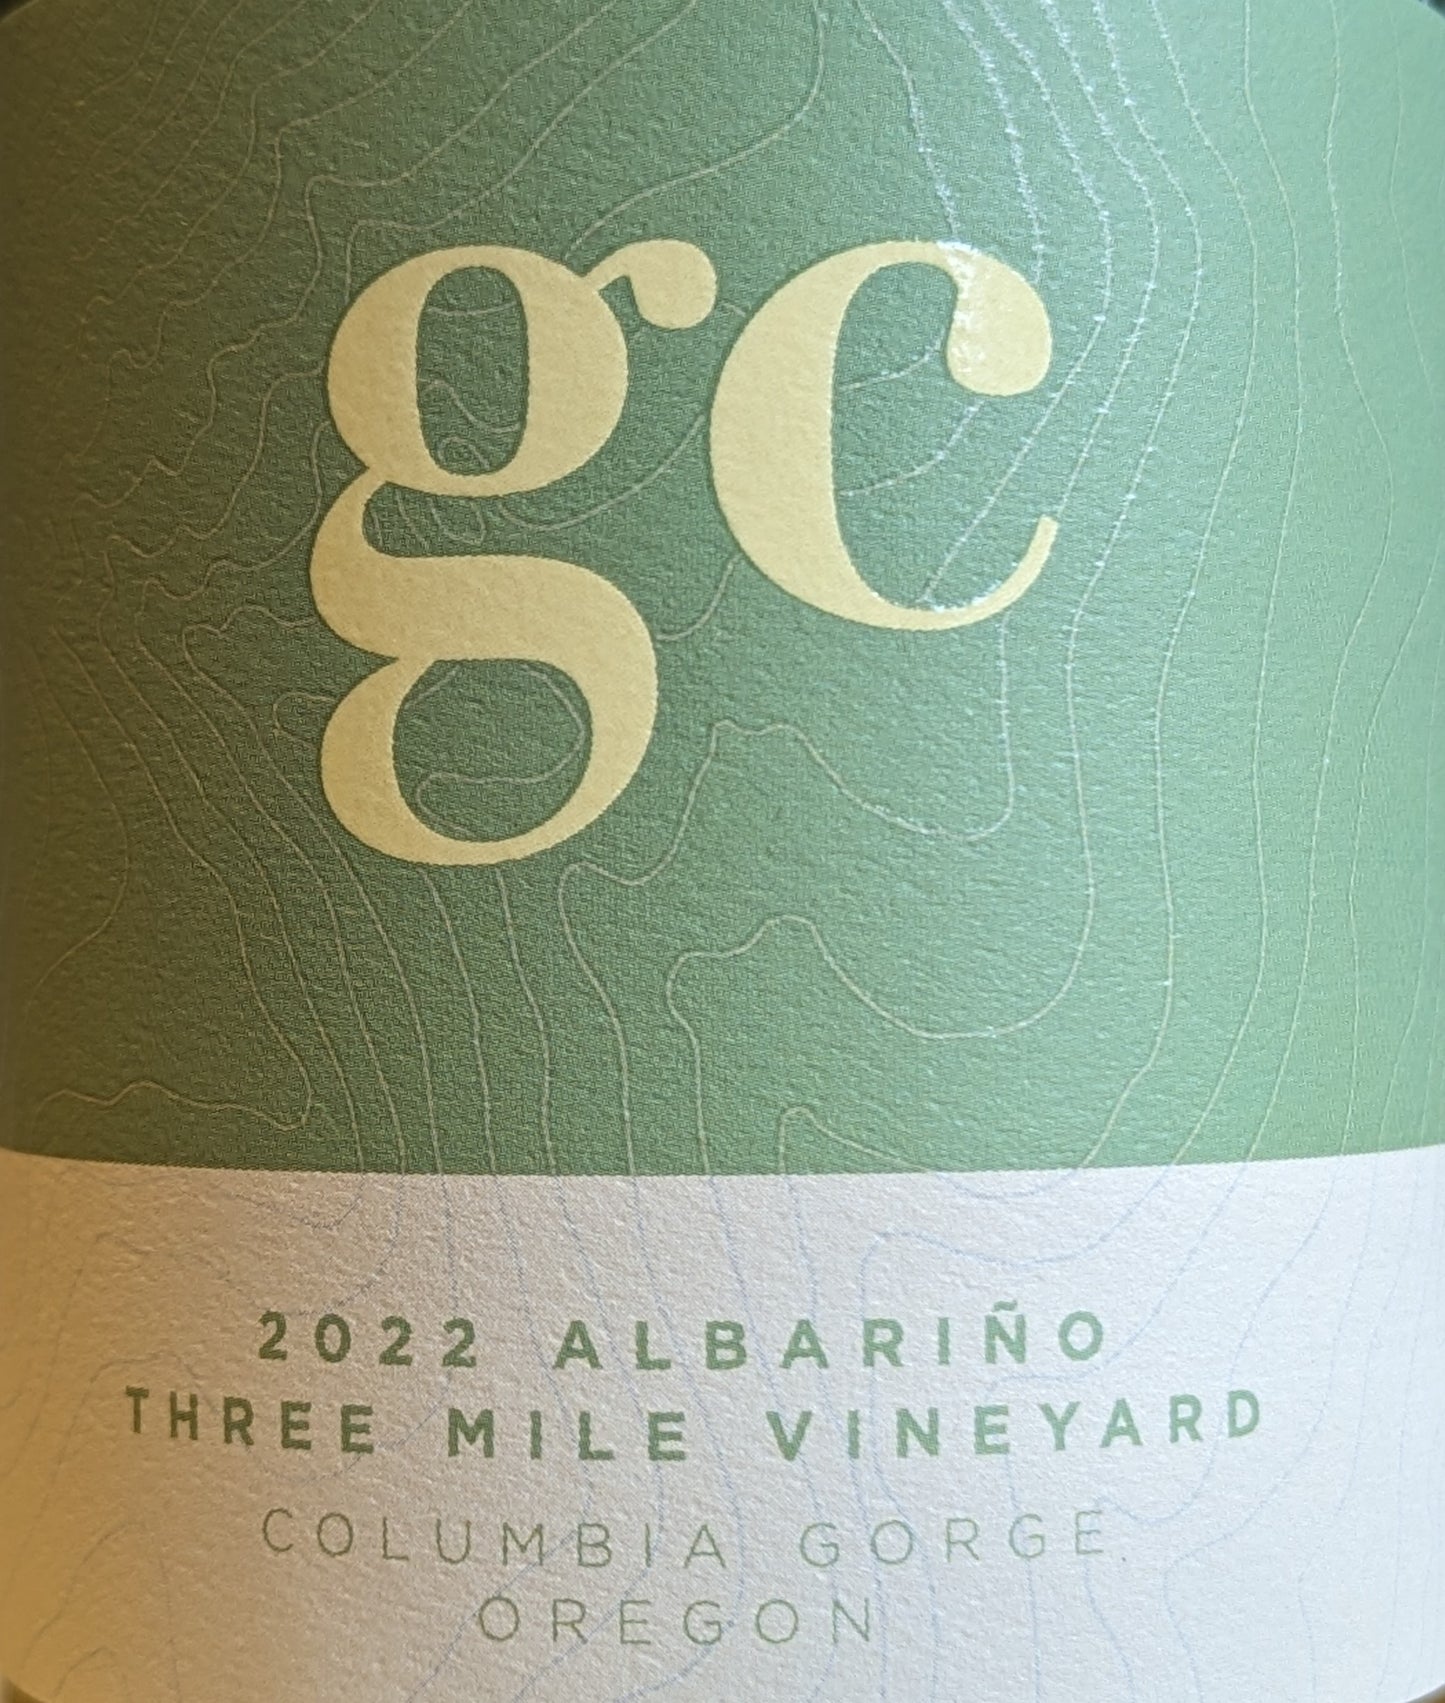 GC Wine Company 'Three Mile Vineyard' - Albarino